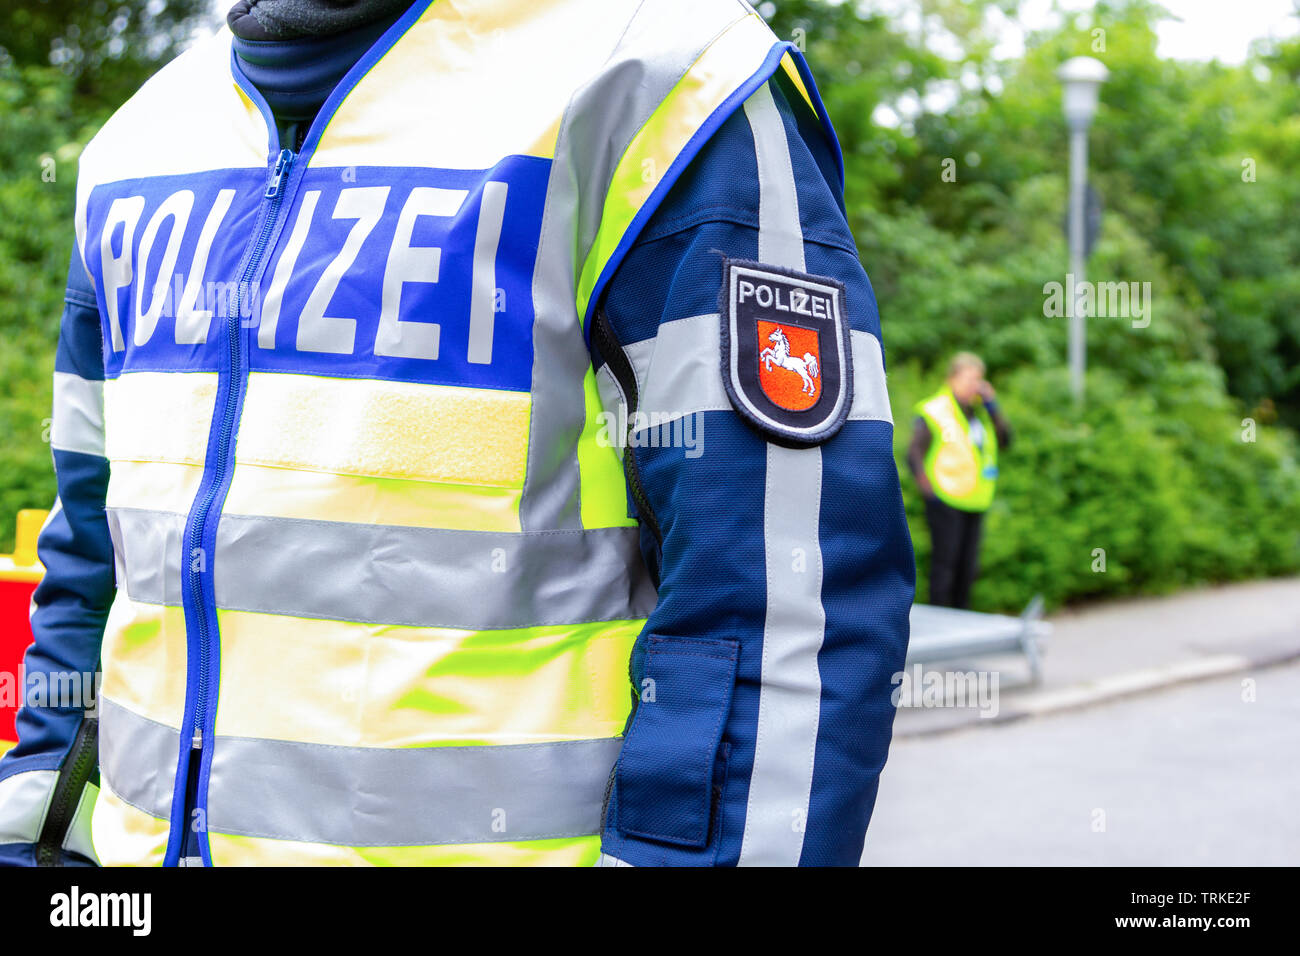 L'emblème de la police allemande portée par un agent. Le mot allemand Polizei, moyens de la police. Banque D'Images